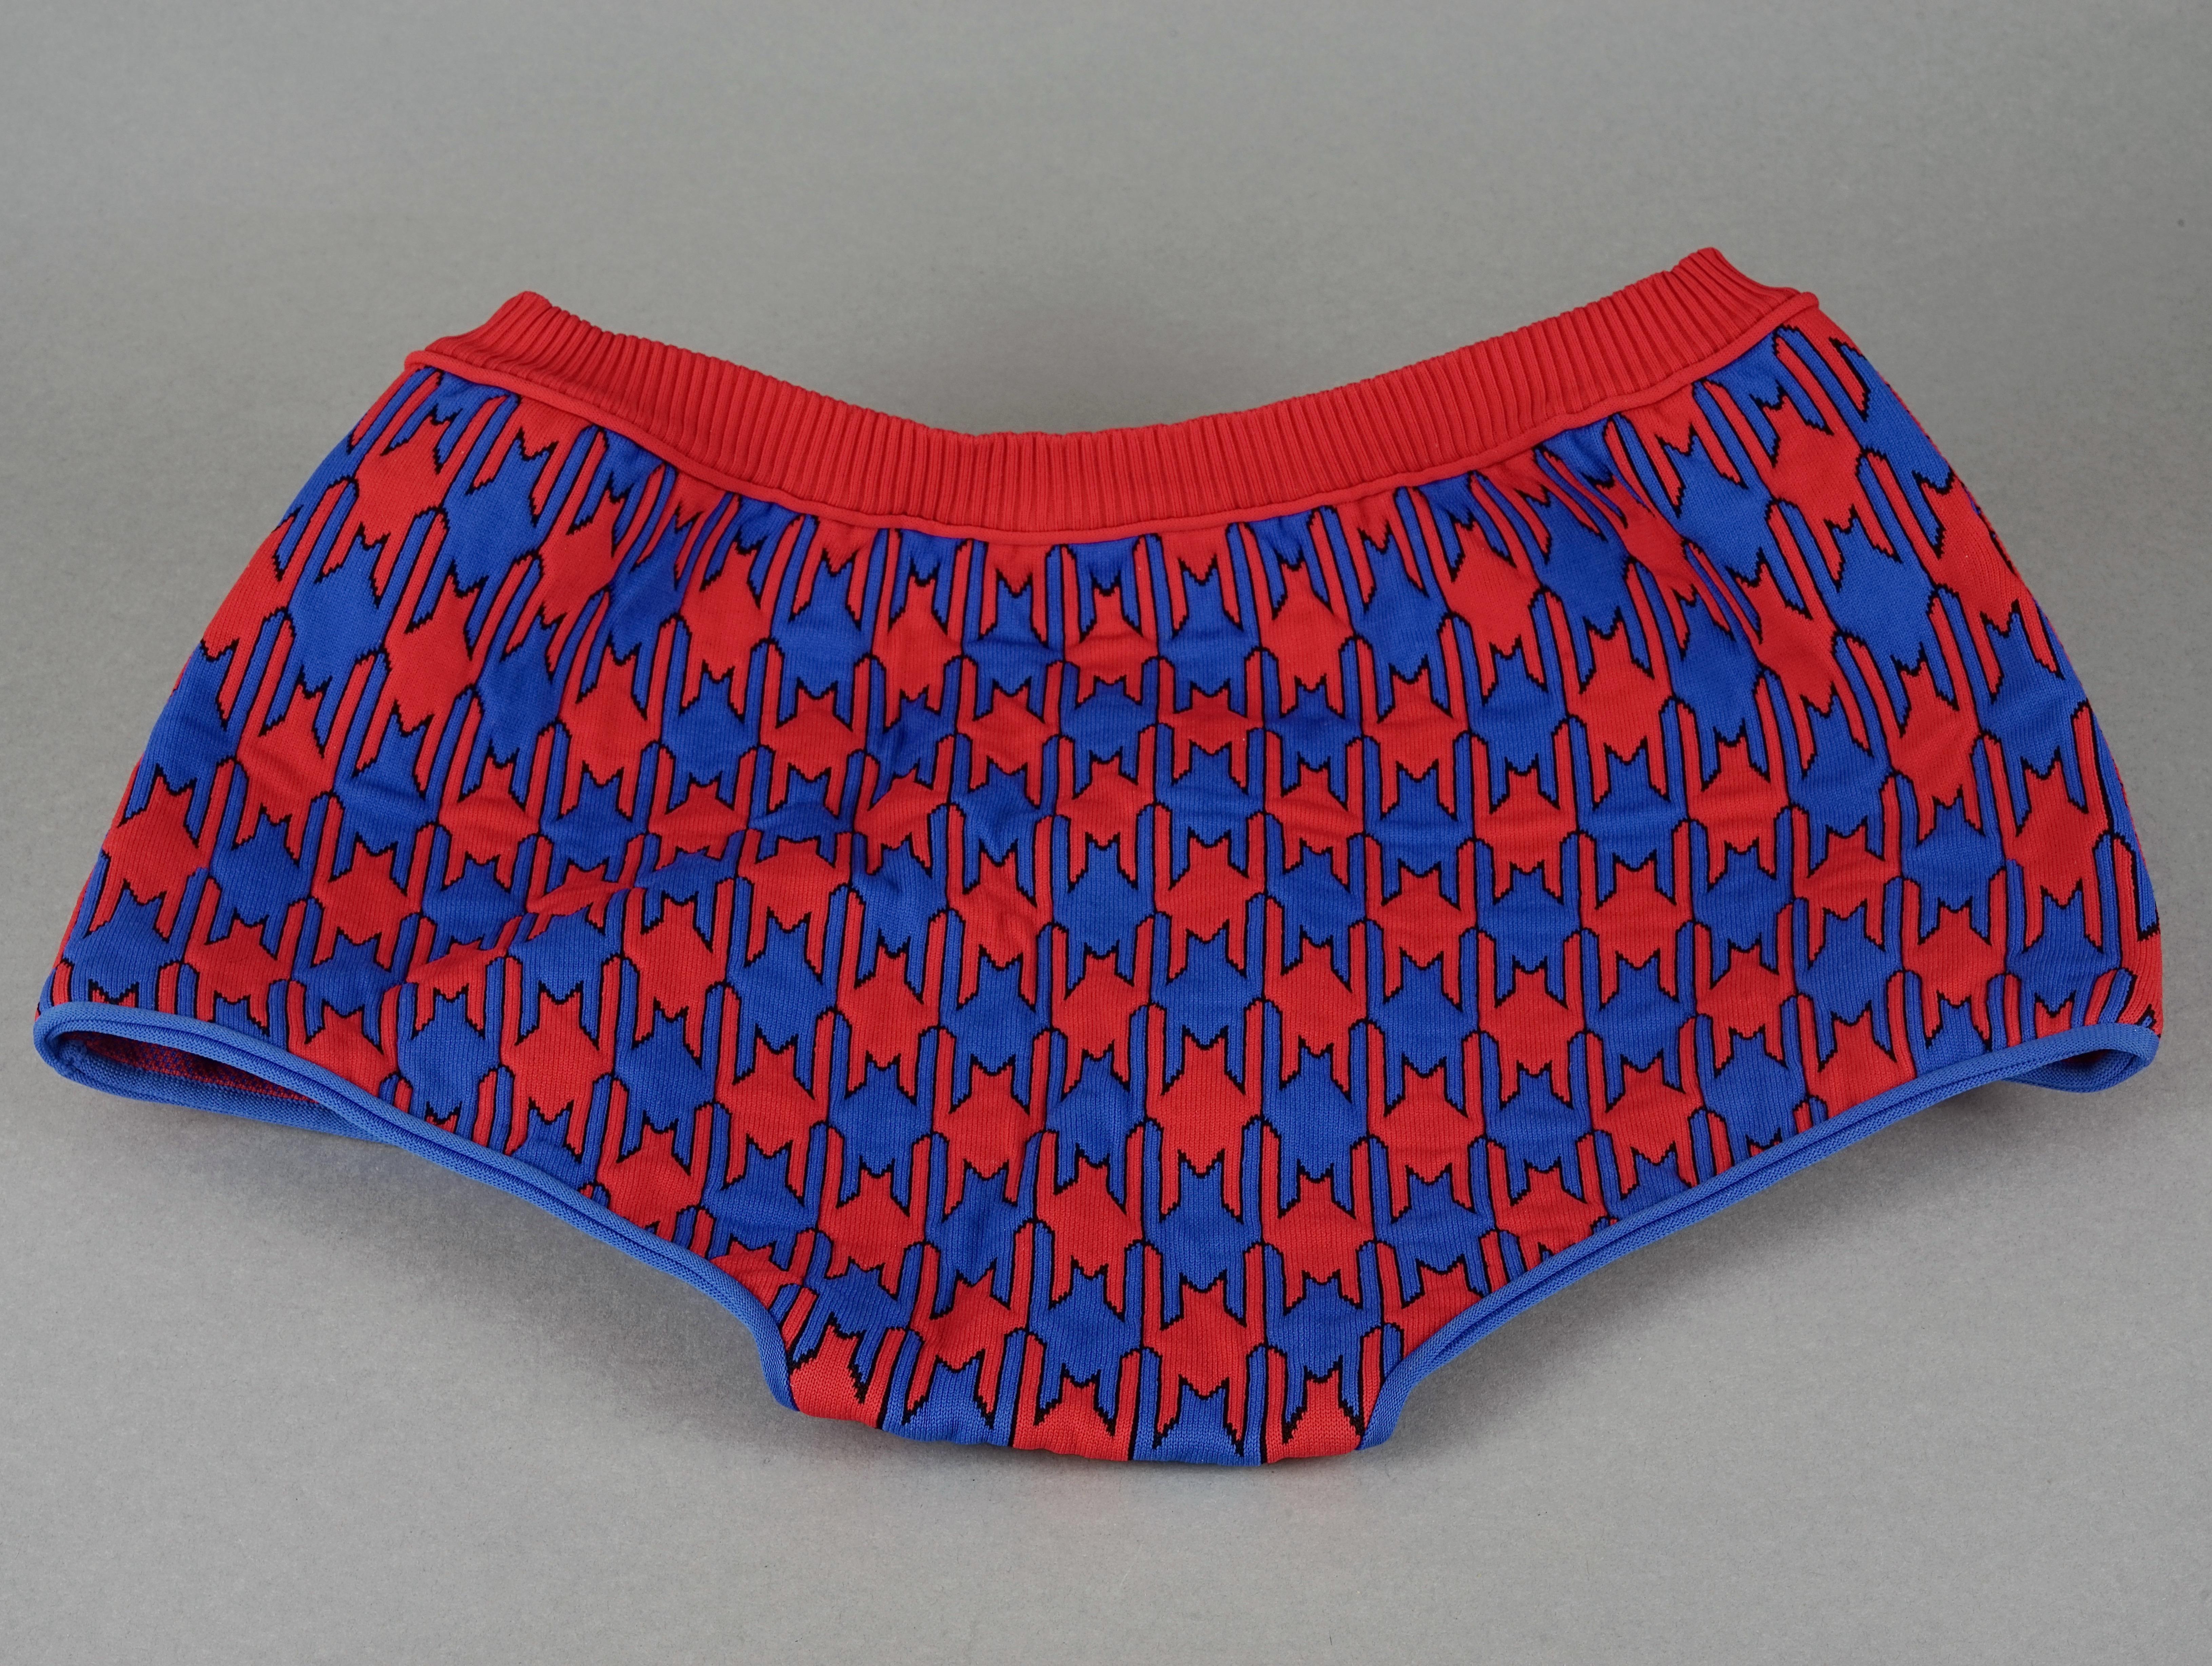 S/S 2015 CELINE Vibrant Diamond Jacquard Knit Shorts 1